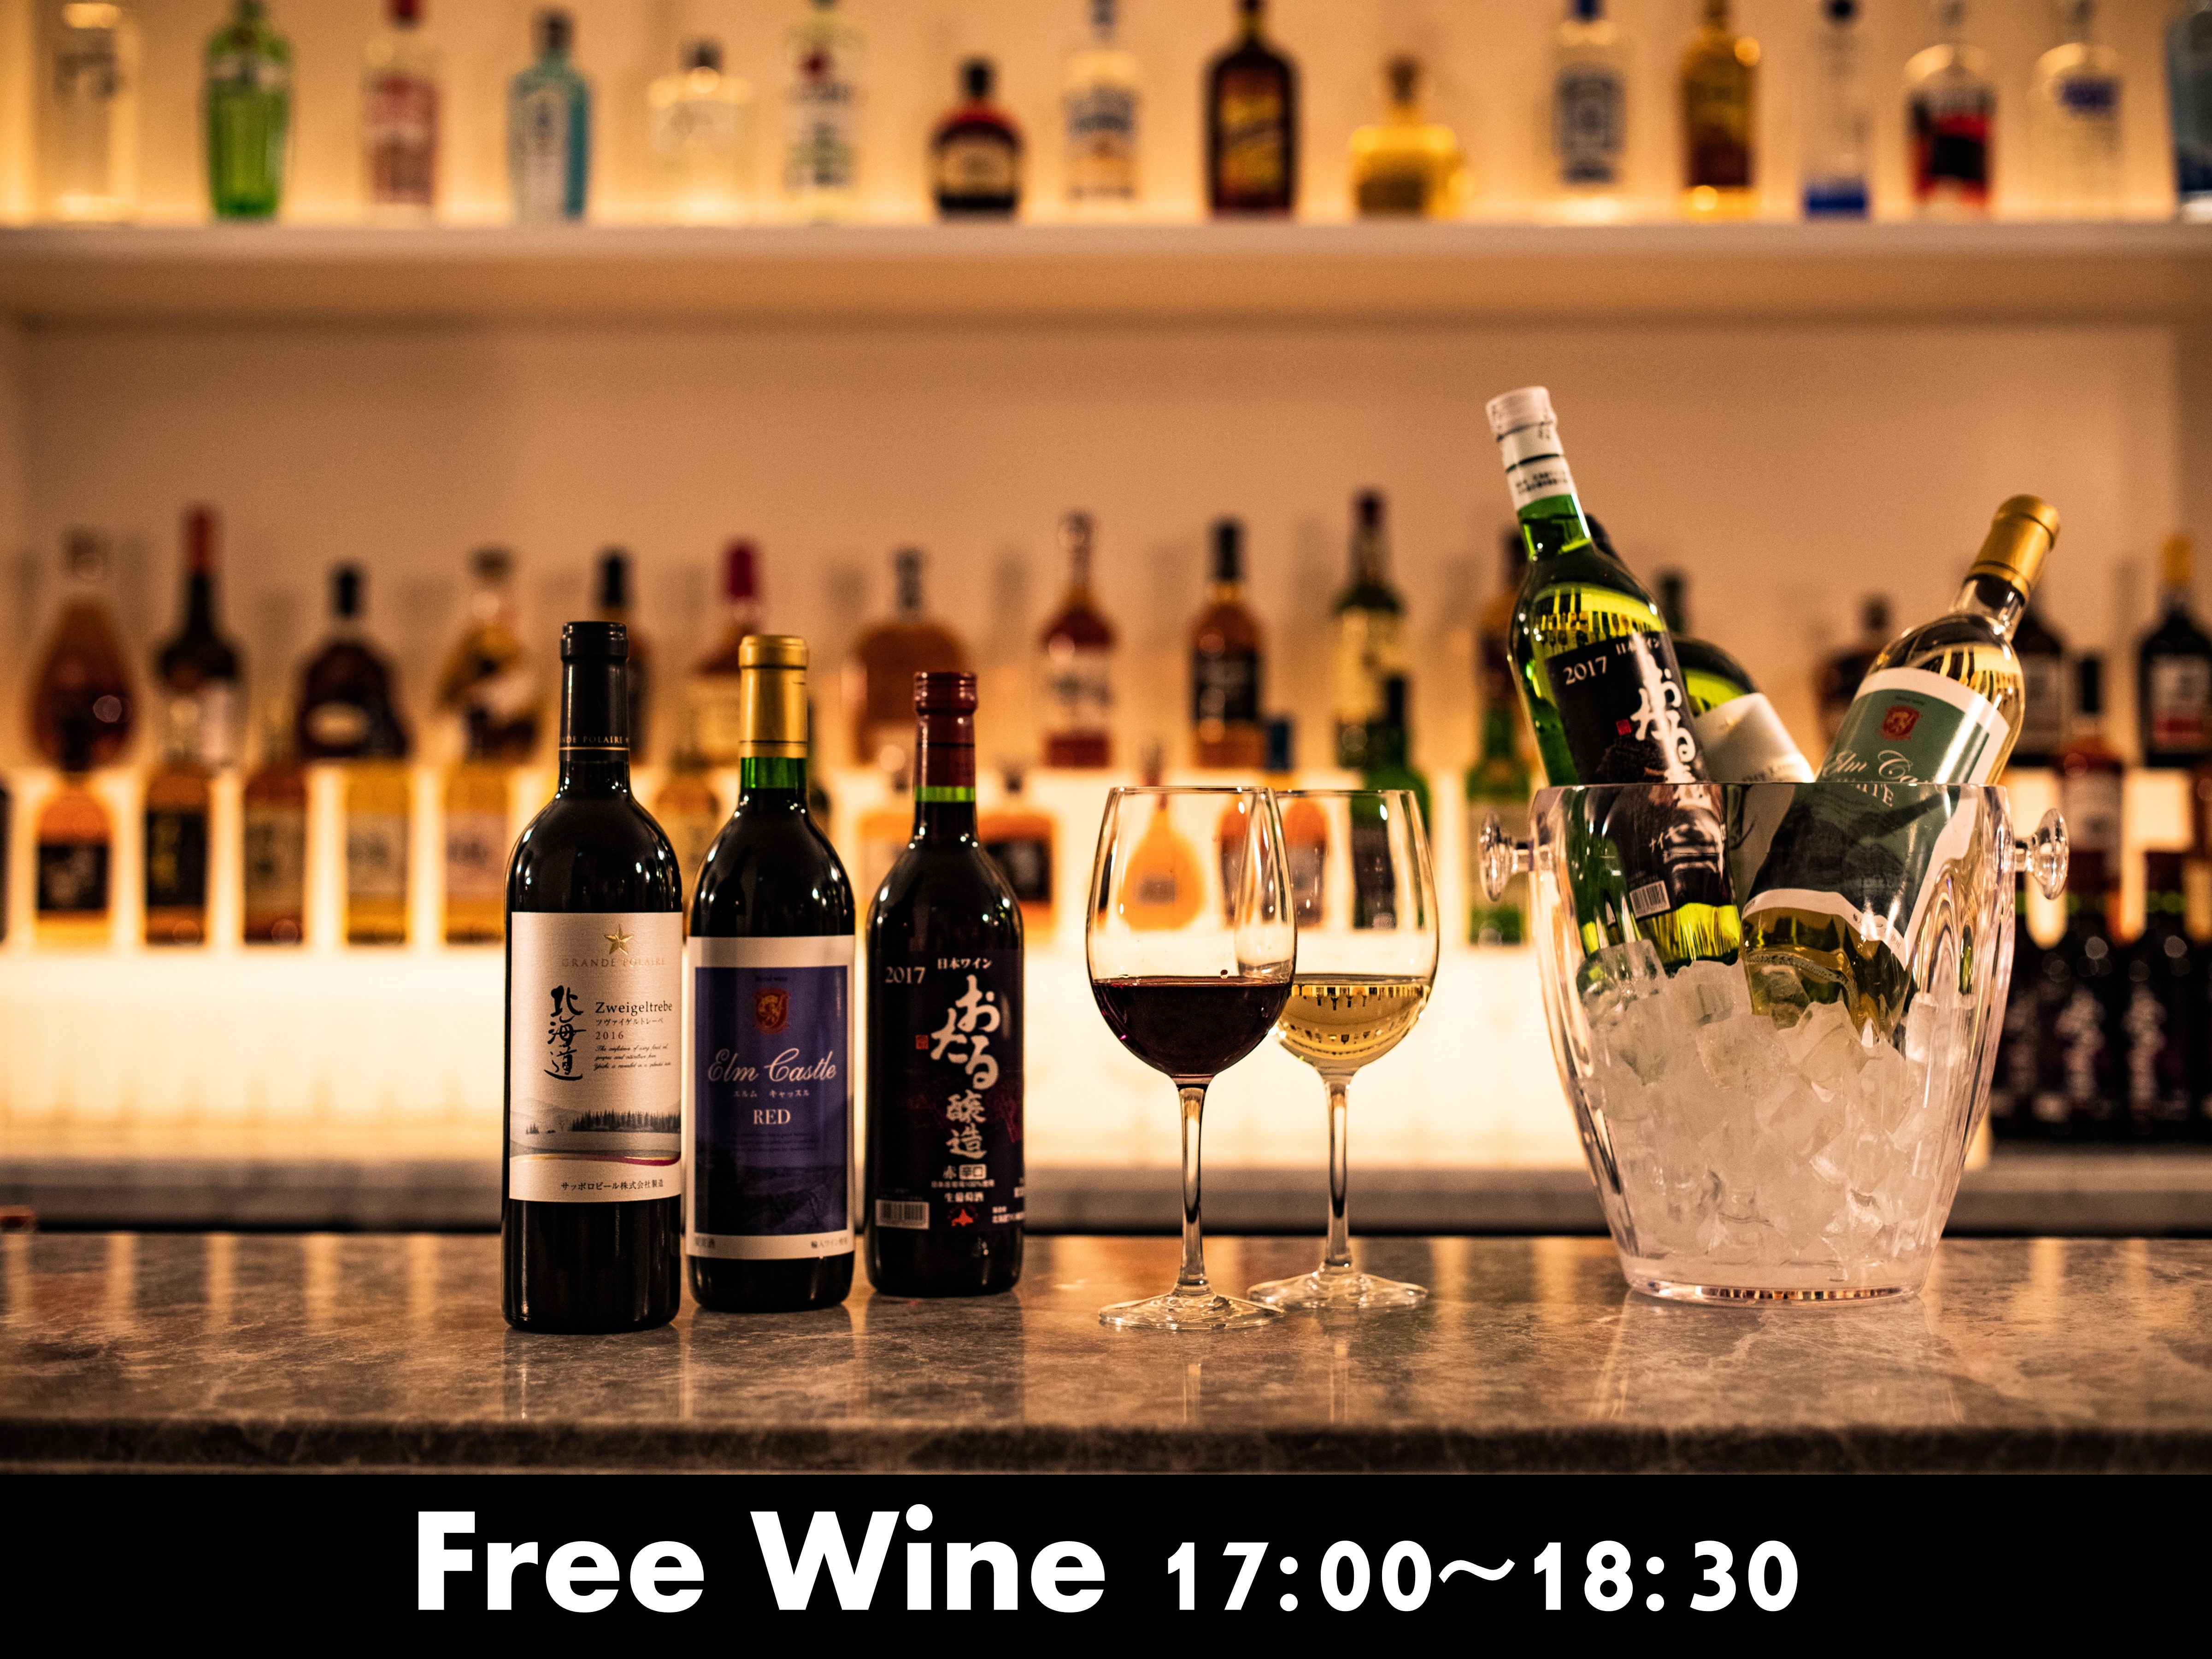 Waktu layanan anggur gratis 17: 00-18: 30